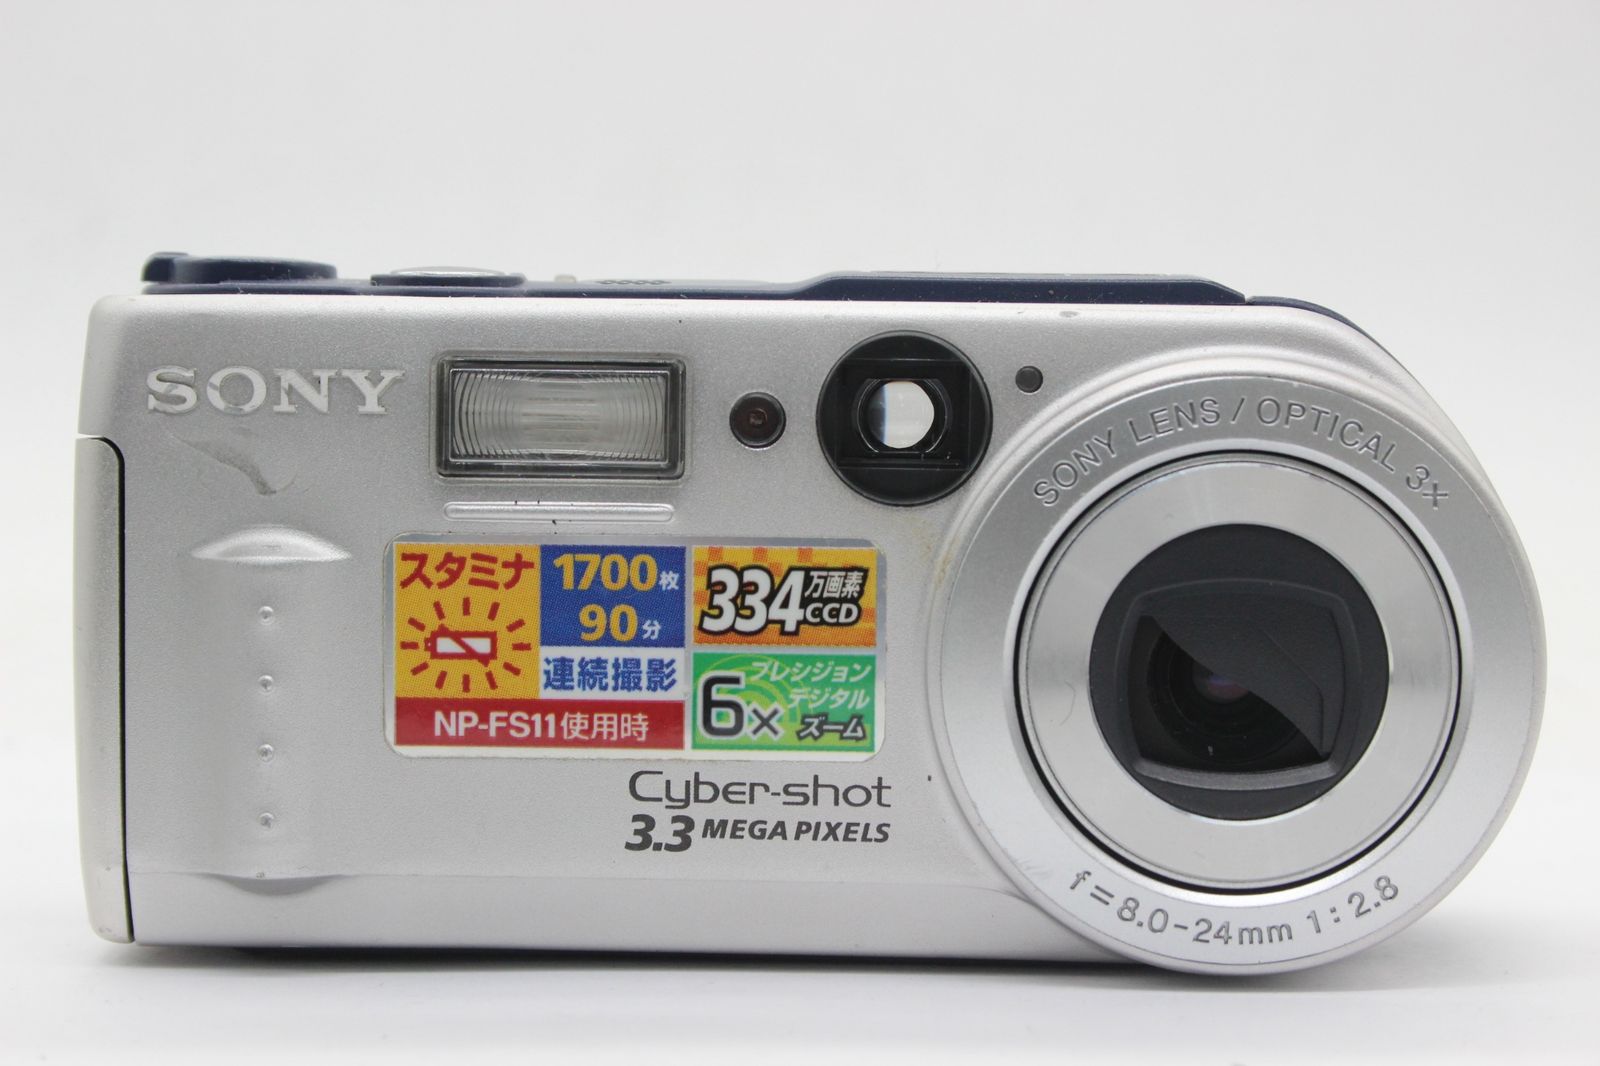 SONY 【返品保証】 ソニー SONY Cyber-shot DSC-P1 3x バッテリー付き コンパクトデジタルカメラ s9616